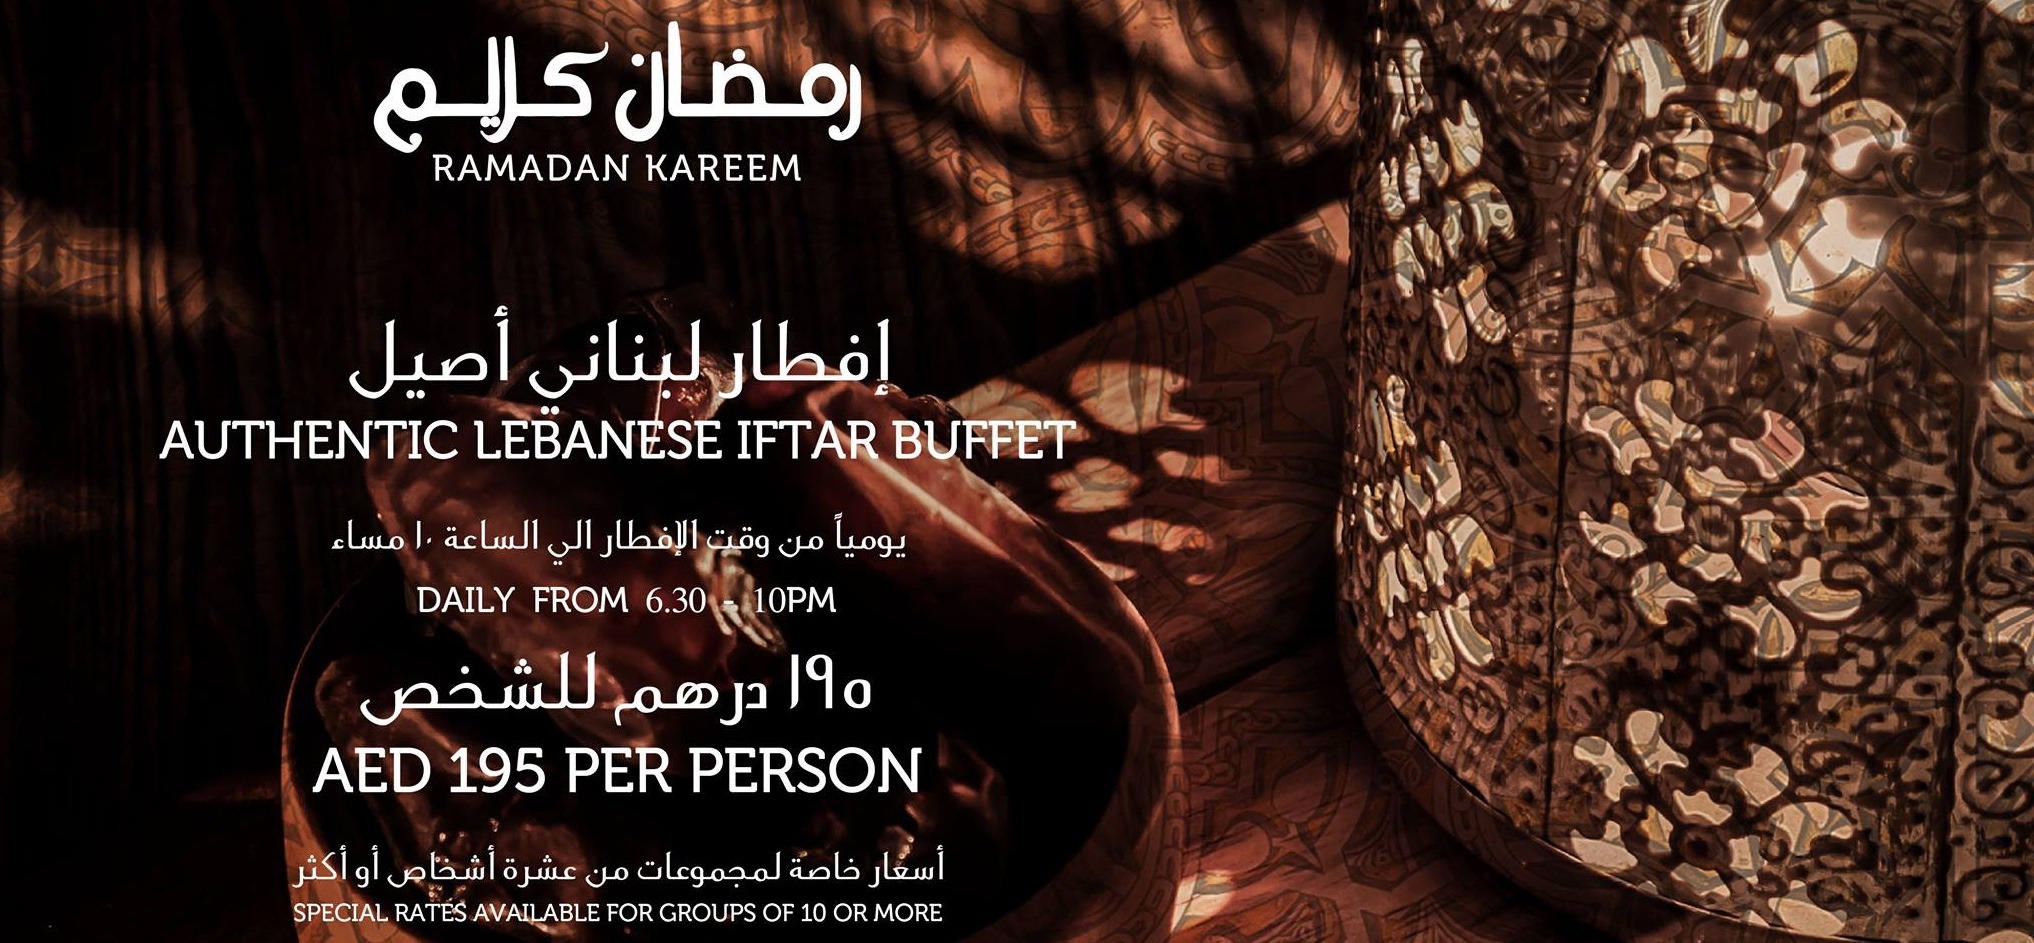 Iftar at Al Nafoorah - Coming Soon in UAE